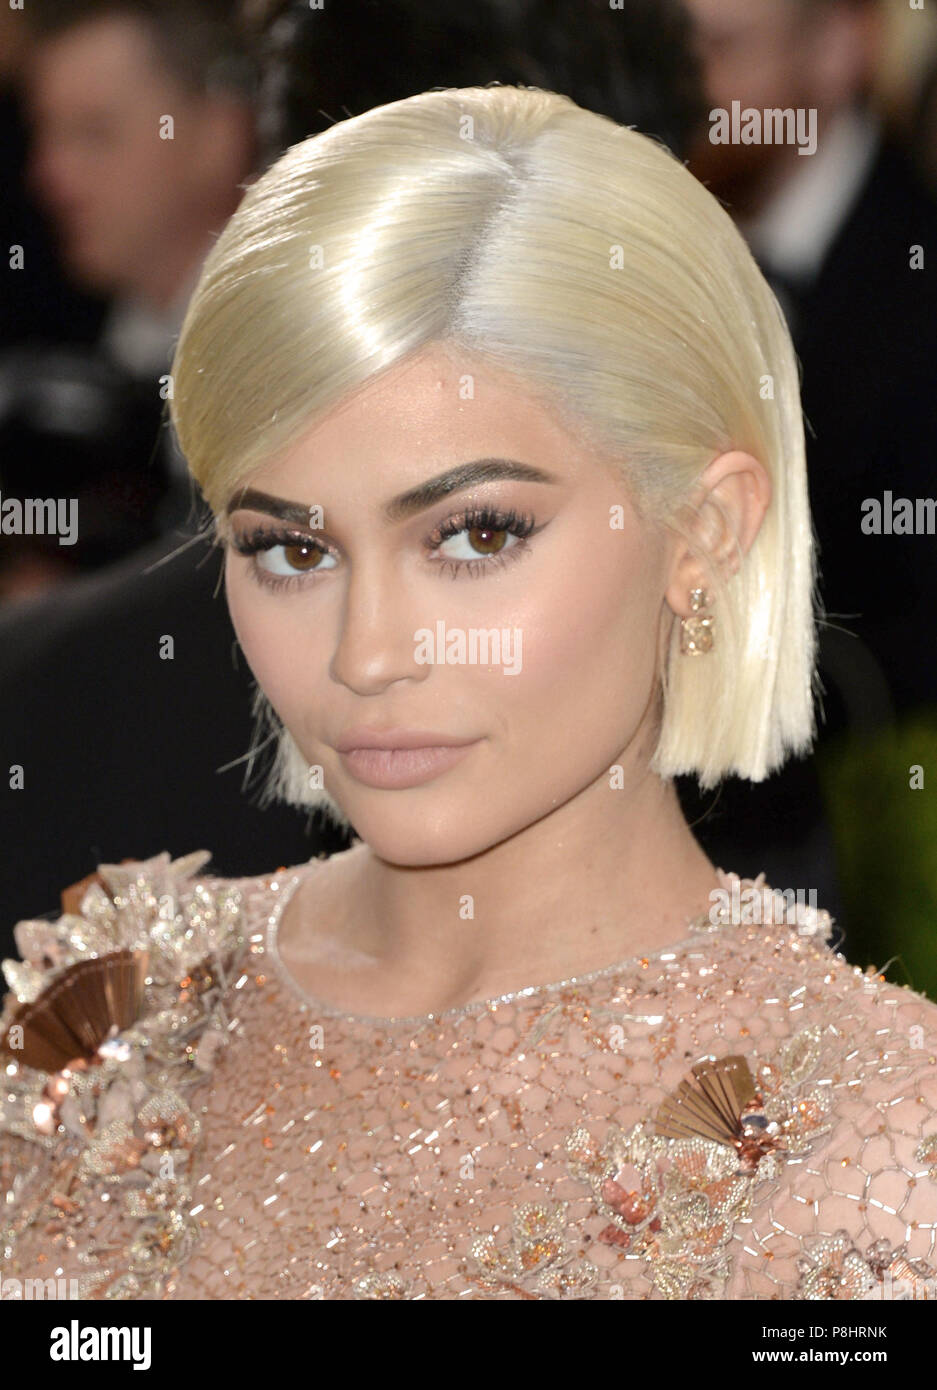 Photo de fichier en date du 01/05/17 de Kylie Jenner, qui a révélé ses cinq mois, a les oreilles percées pour la première fois dans une vidéo Snapchat. Banque D'Images